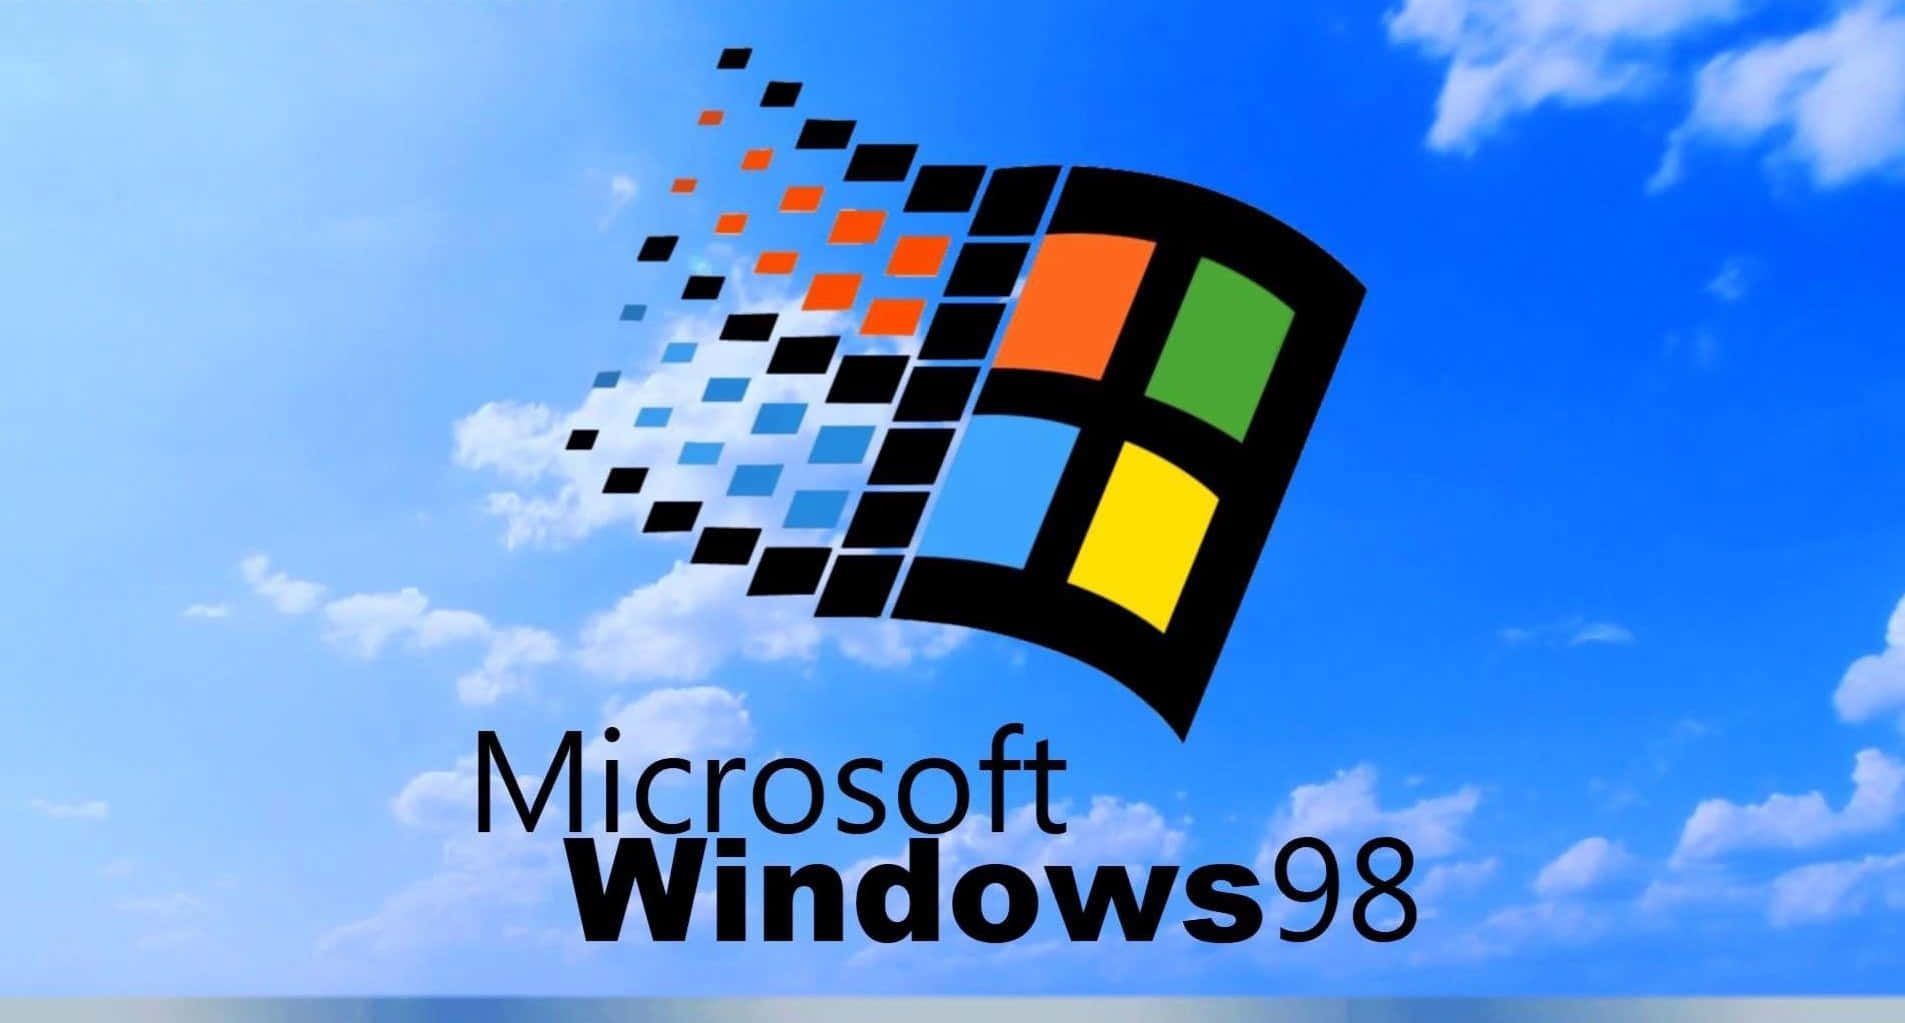 Aesthetic Windows 98 Desktop